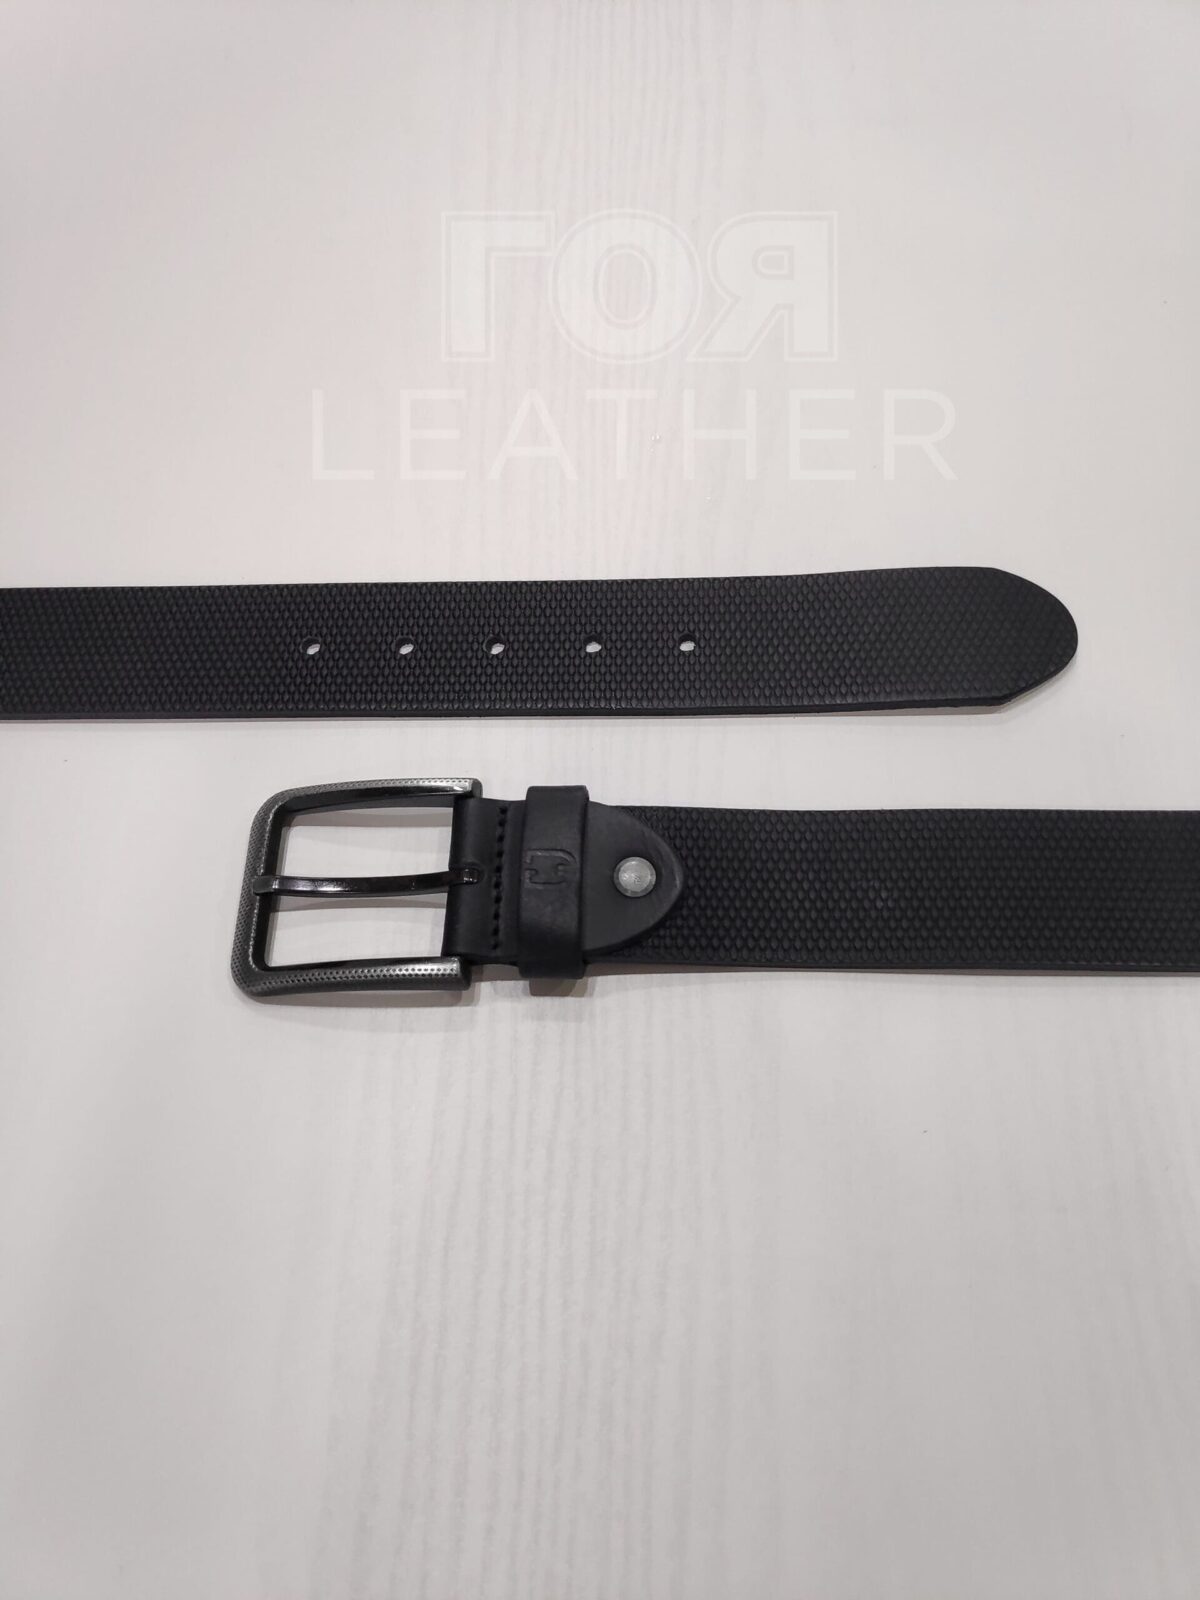 Черен кожен колан с релефен принт от ГОЯ Leather. 100% естествена телешка кожа. Нов модел кожен колан.